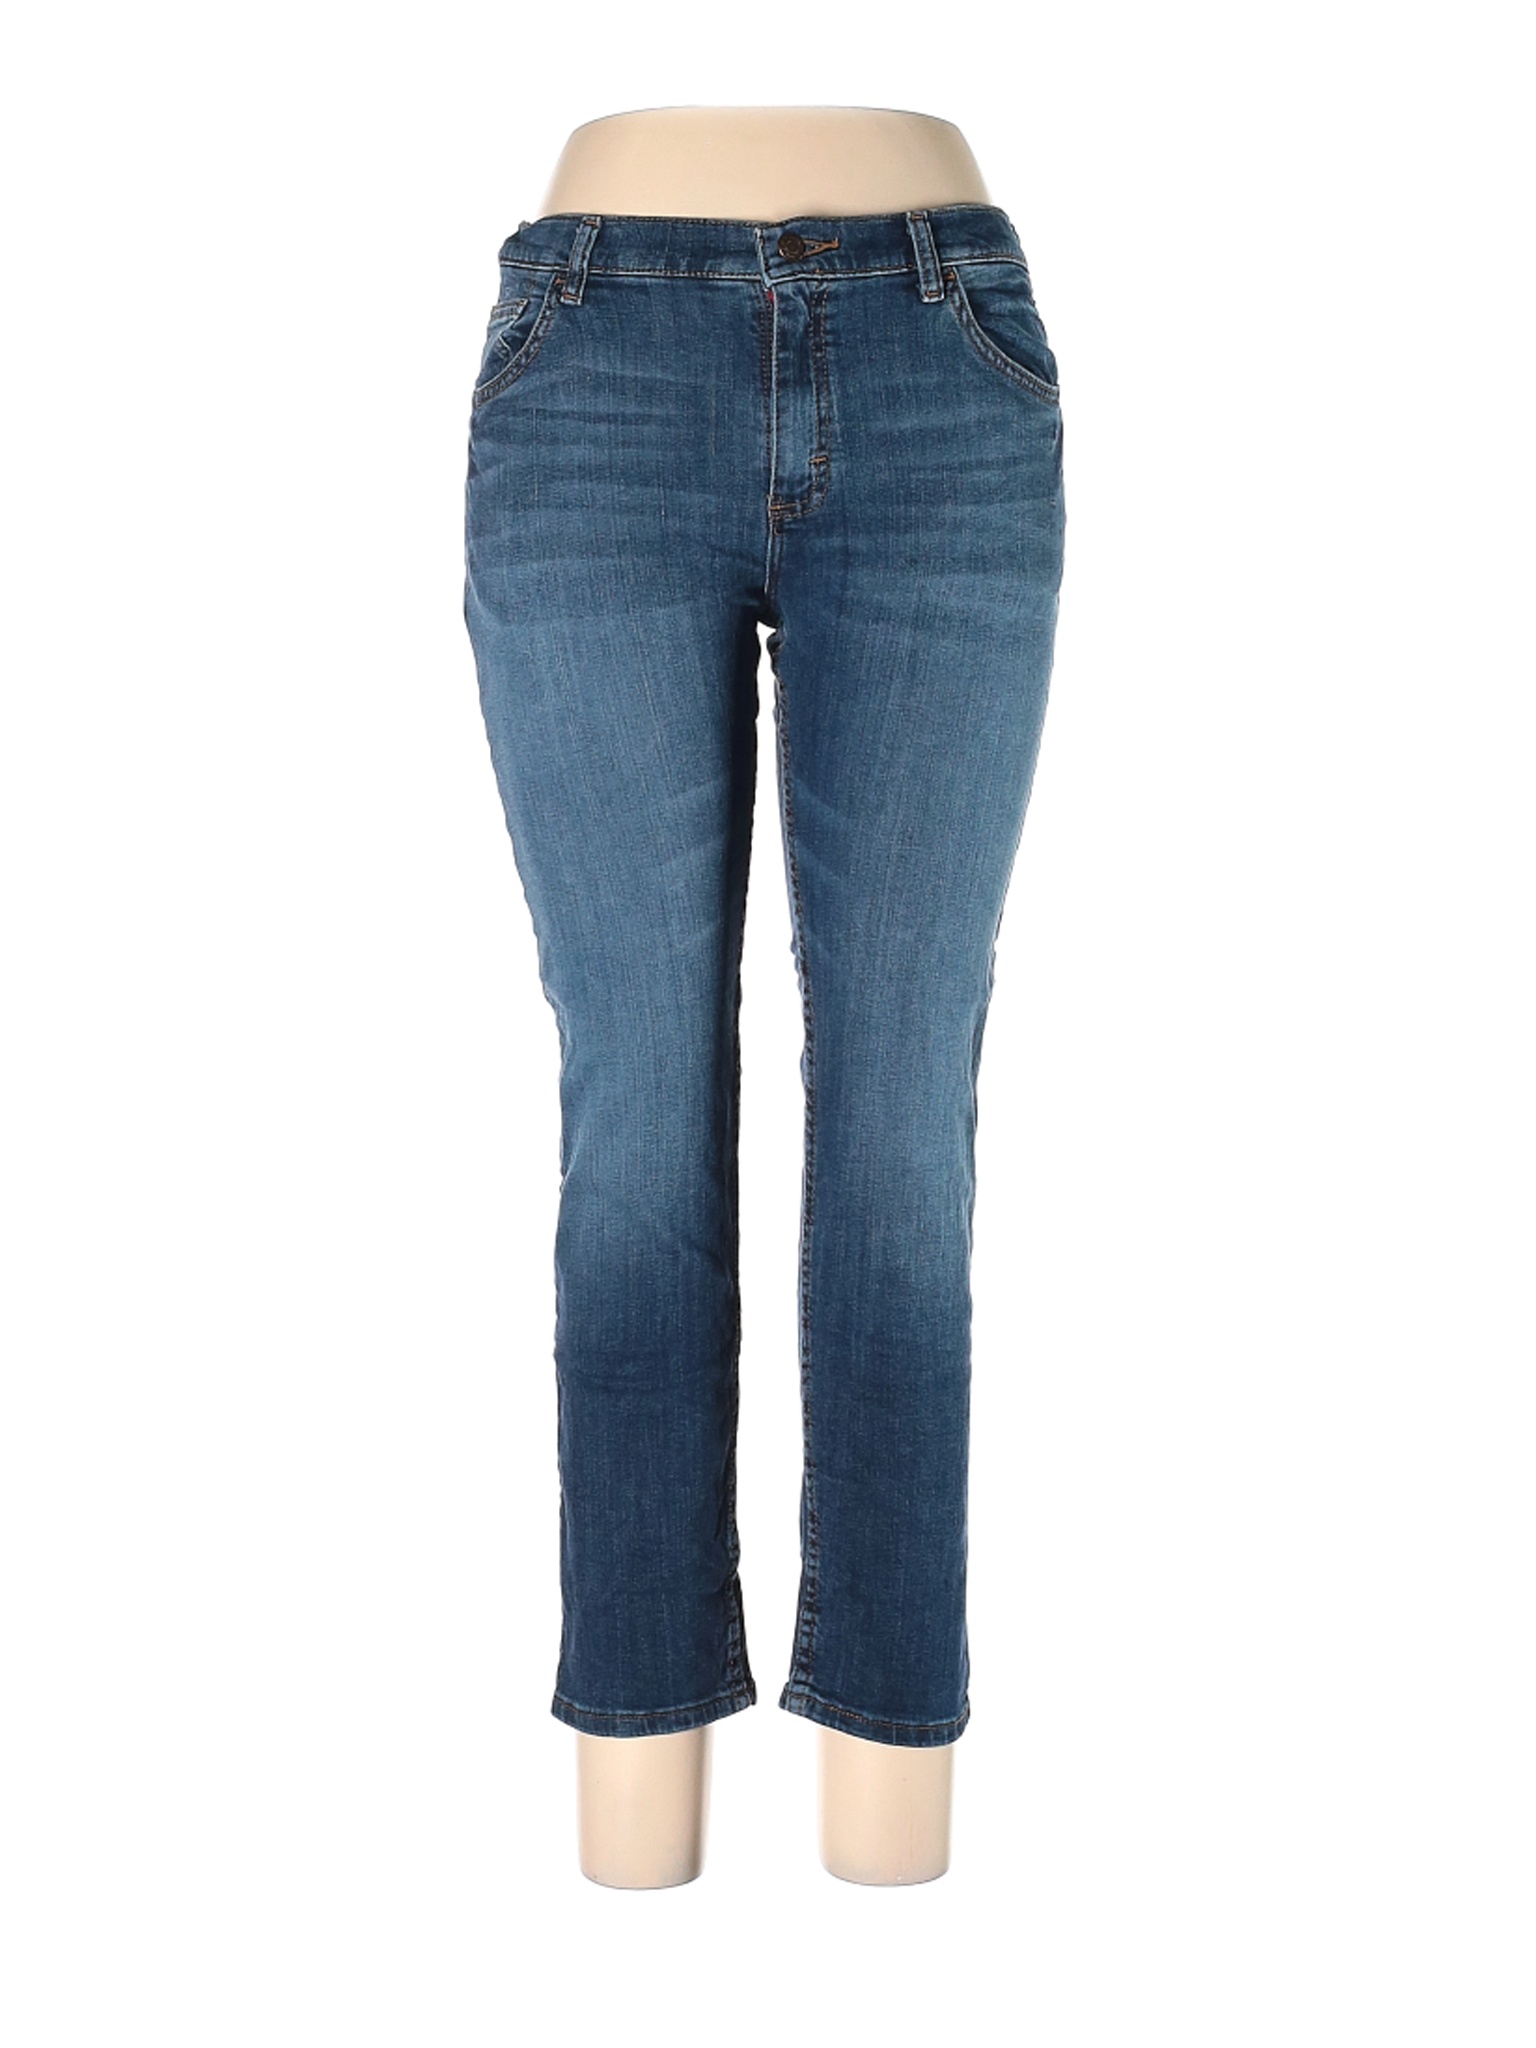 Wrangler Jeans Co Girls Blue Jeans 14 | eBay